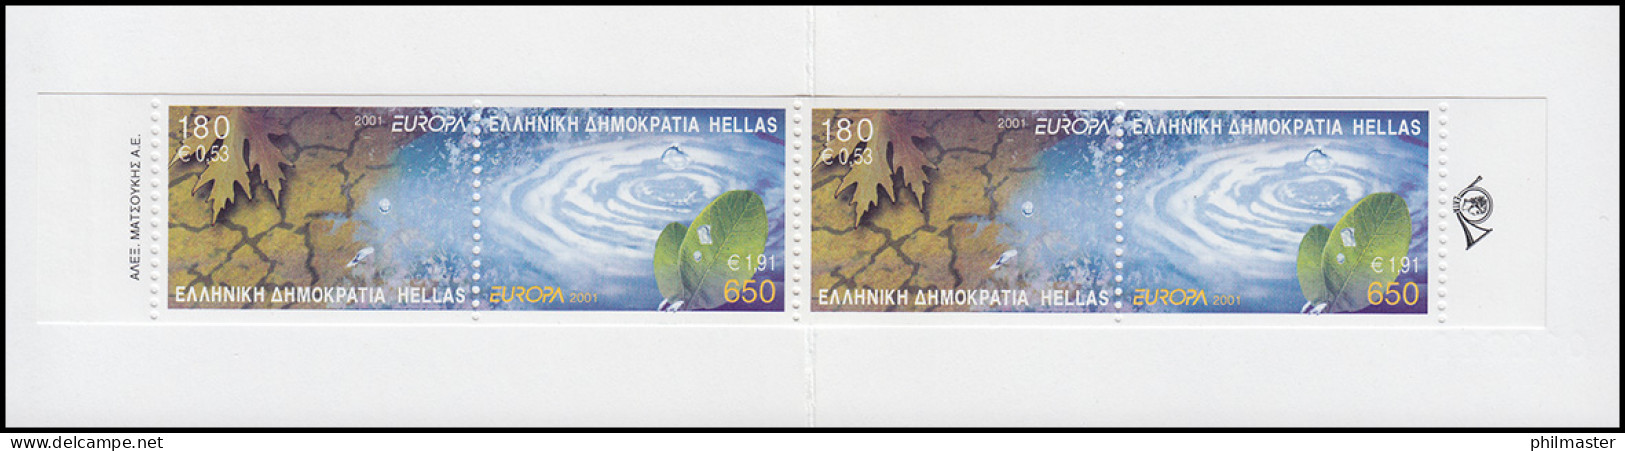 Griechenland Markenheftchen 23 Europa 2001, ** Postfrisch - Markenheftchen